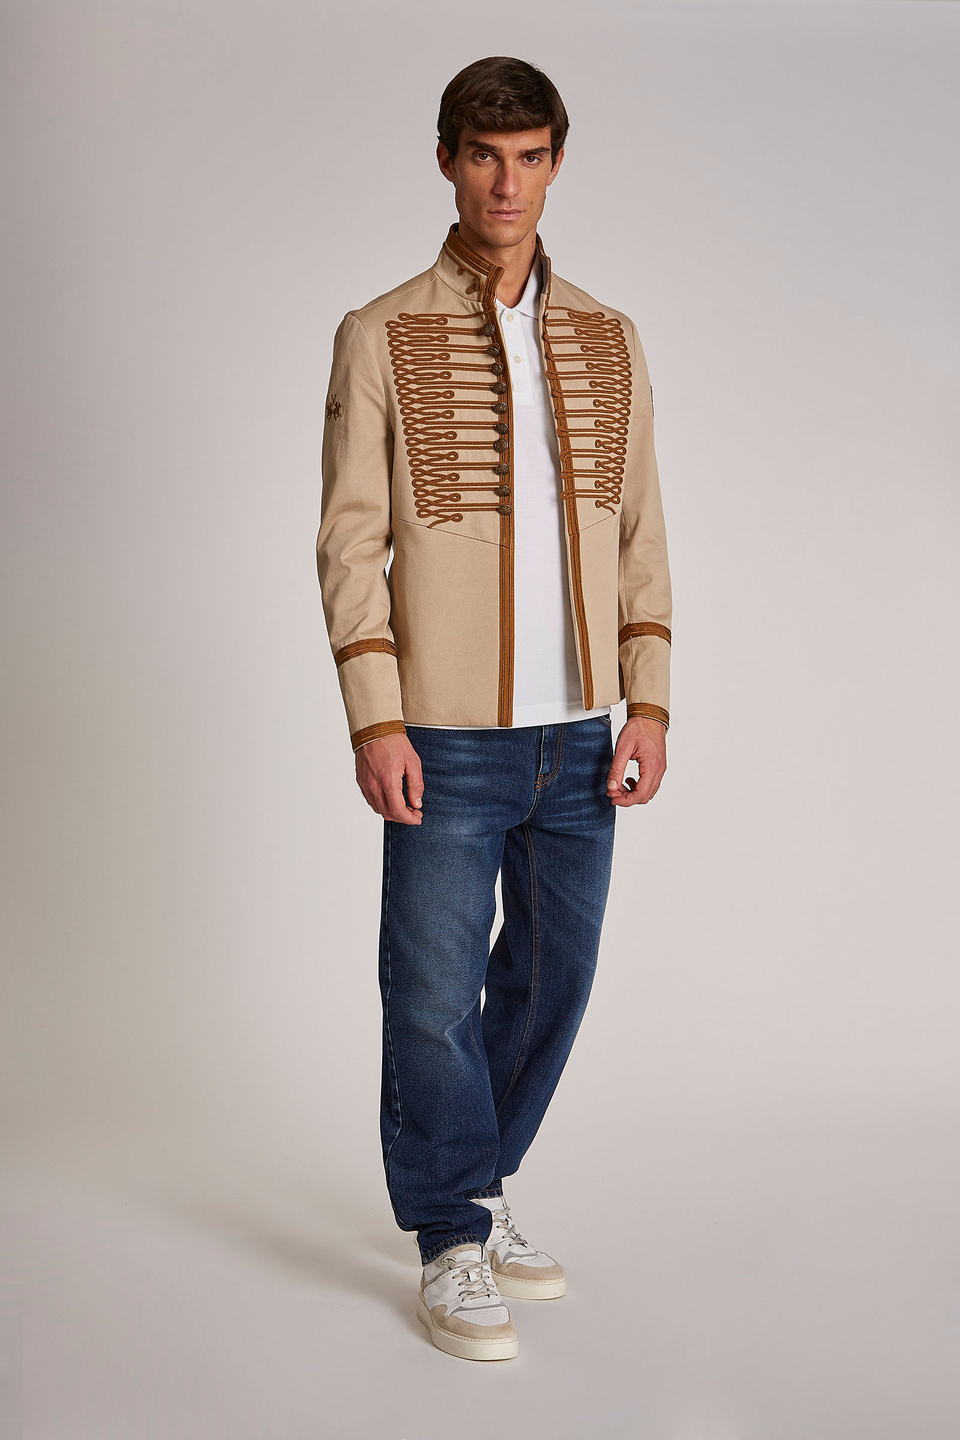 Veste homme style Royal British en coton, coupe classique | La Martina - Official Online Shop